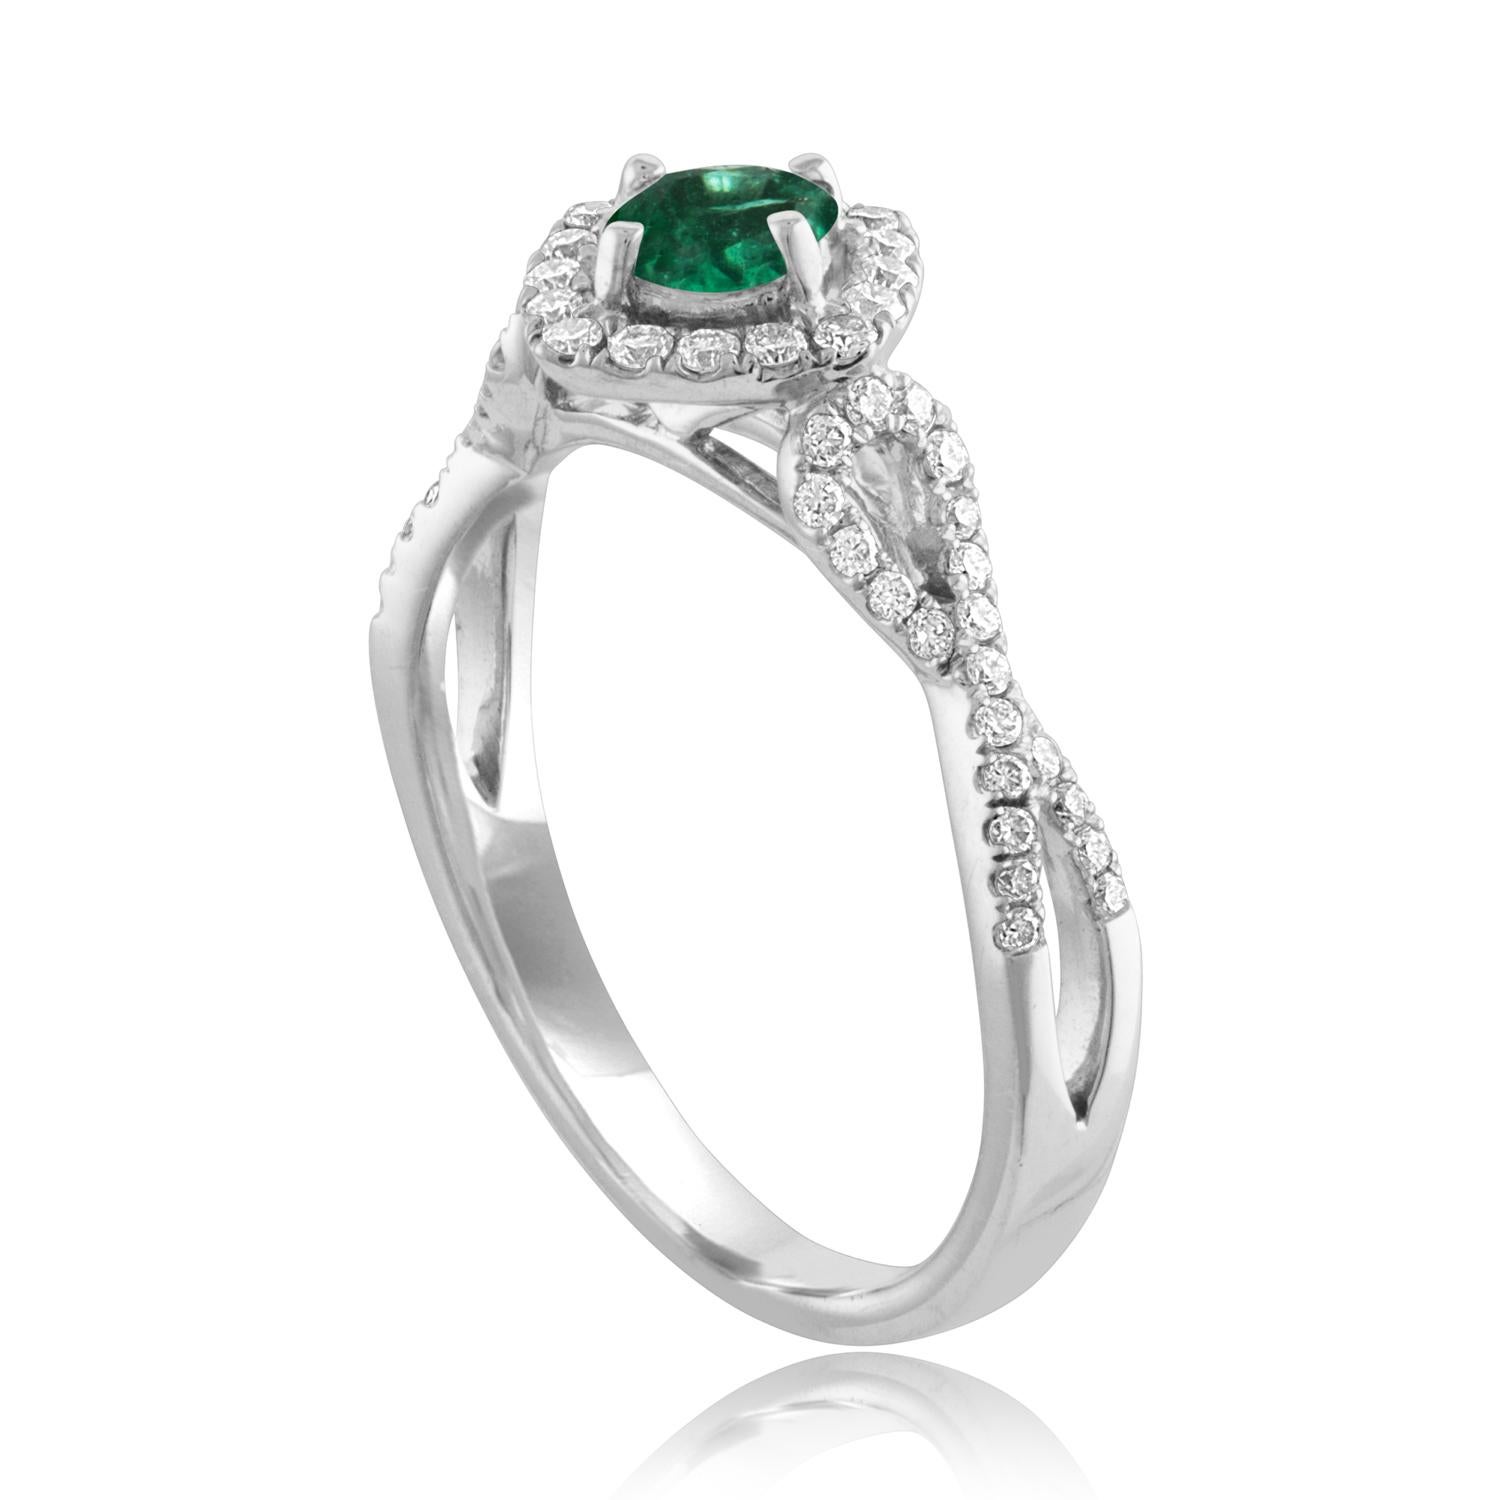 Schöner quadratischer Halo-Cross-Cross-Schaft-Smaragd-Ring
Der Ring ist aus 18 Karat Weißgold.
Das Zentrum ist ein wunderschöner rund geschliffener Smaragd von 0,29 Karat.
Der Smaragd ist AGL-zertifiziert.
Es sind 0.45 Karat in Diamanten F/G